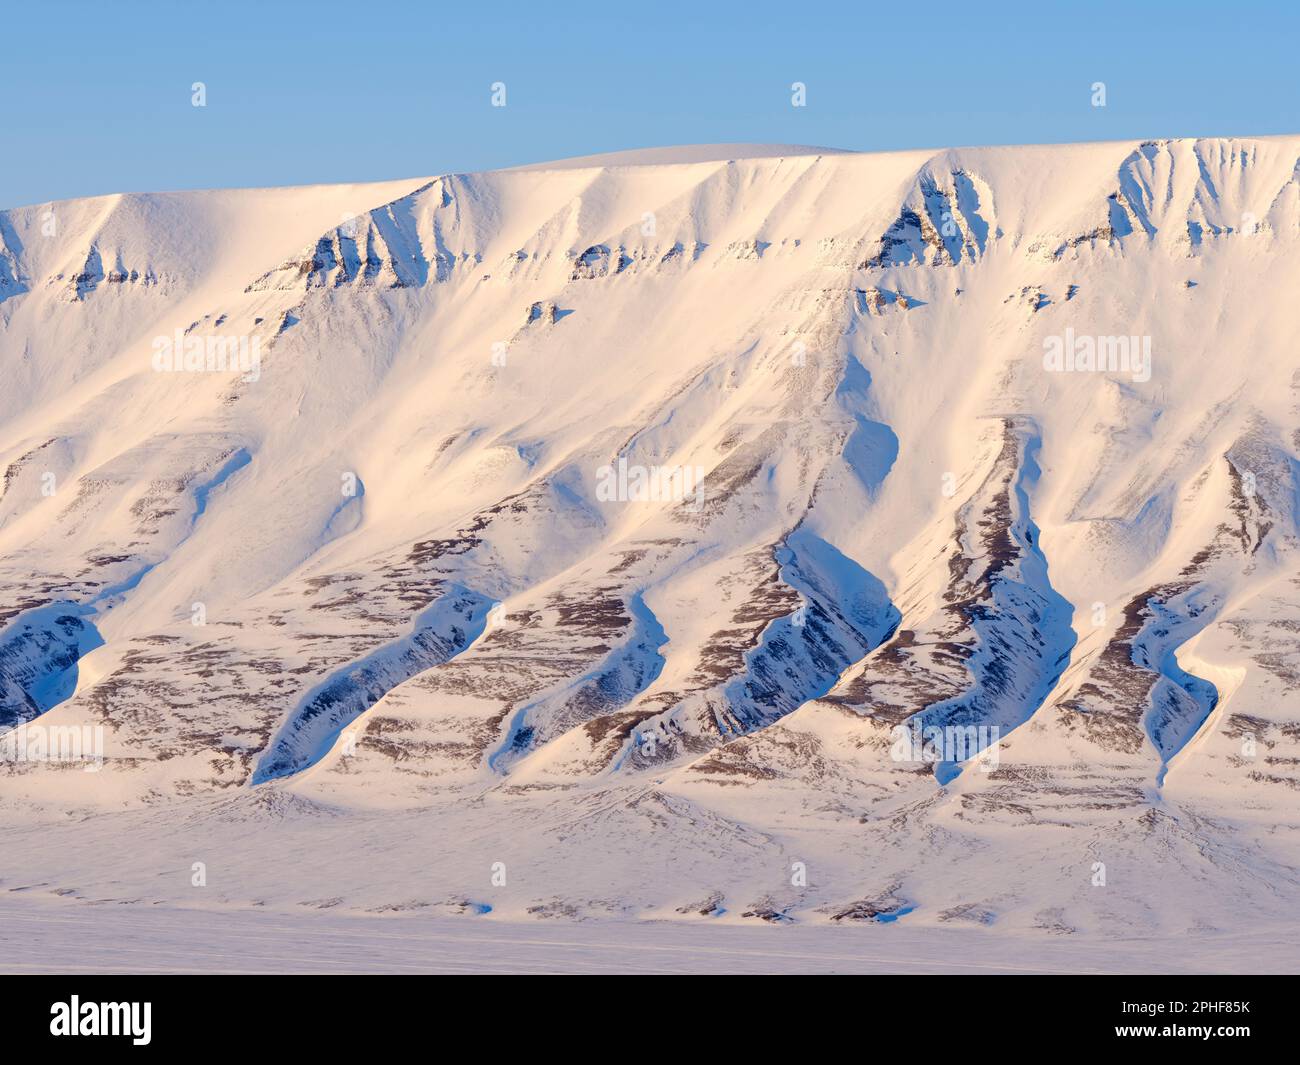 Landschaft im Adventdalen bei Longyearbyen auf der Insel Spitzbergen im Spitzbergen Archipel. Arktis, Europa, Skandinavien, Norwegen, Spitzbergen Foto Stock